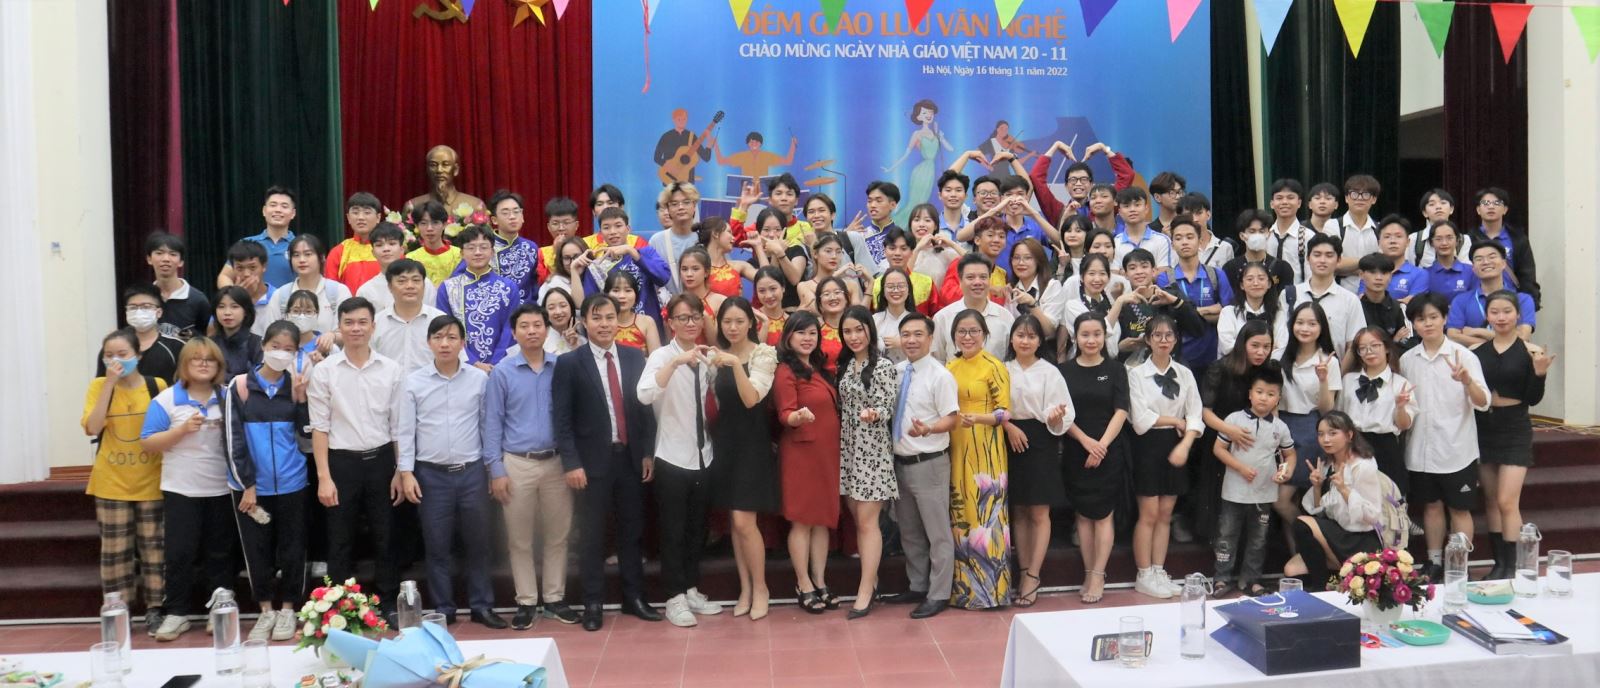 Viện Công nghệ thông tin tổ chức giao lưu âm nhạc chào mừng ngày Nhà giáo Việt Nam